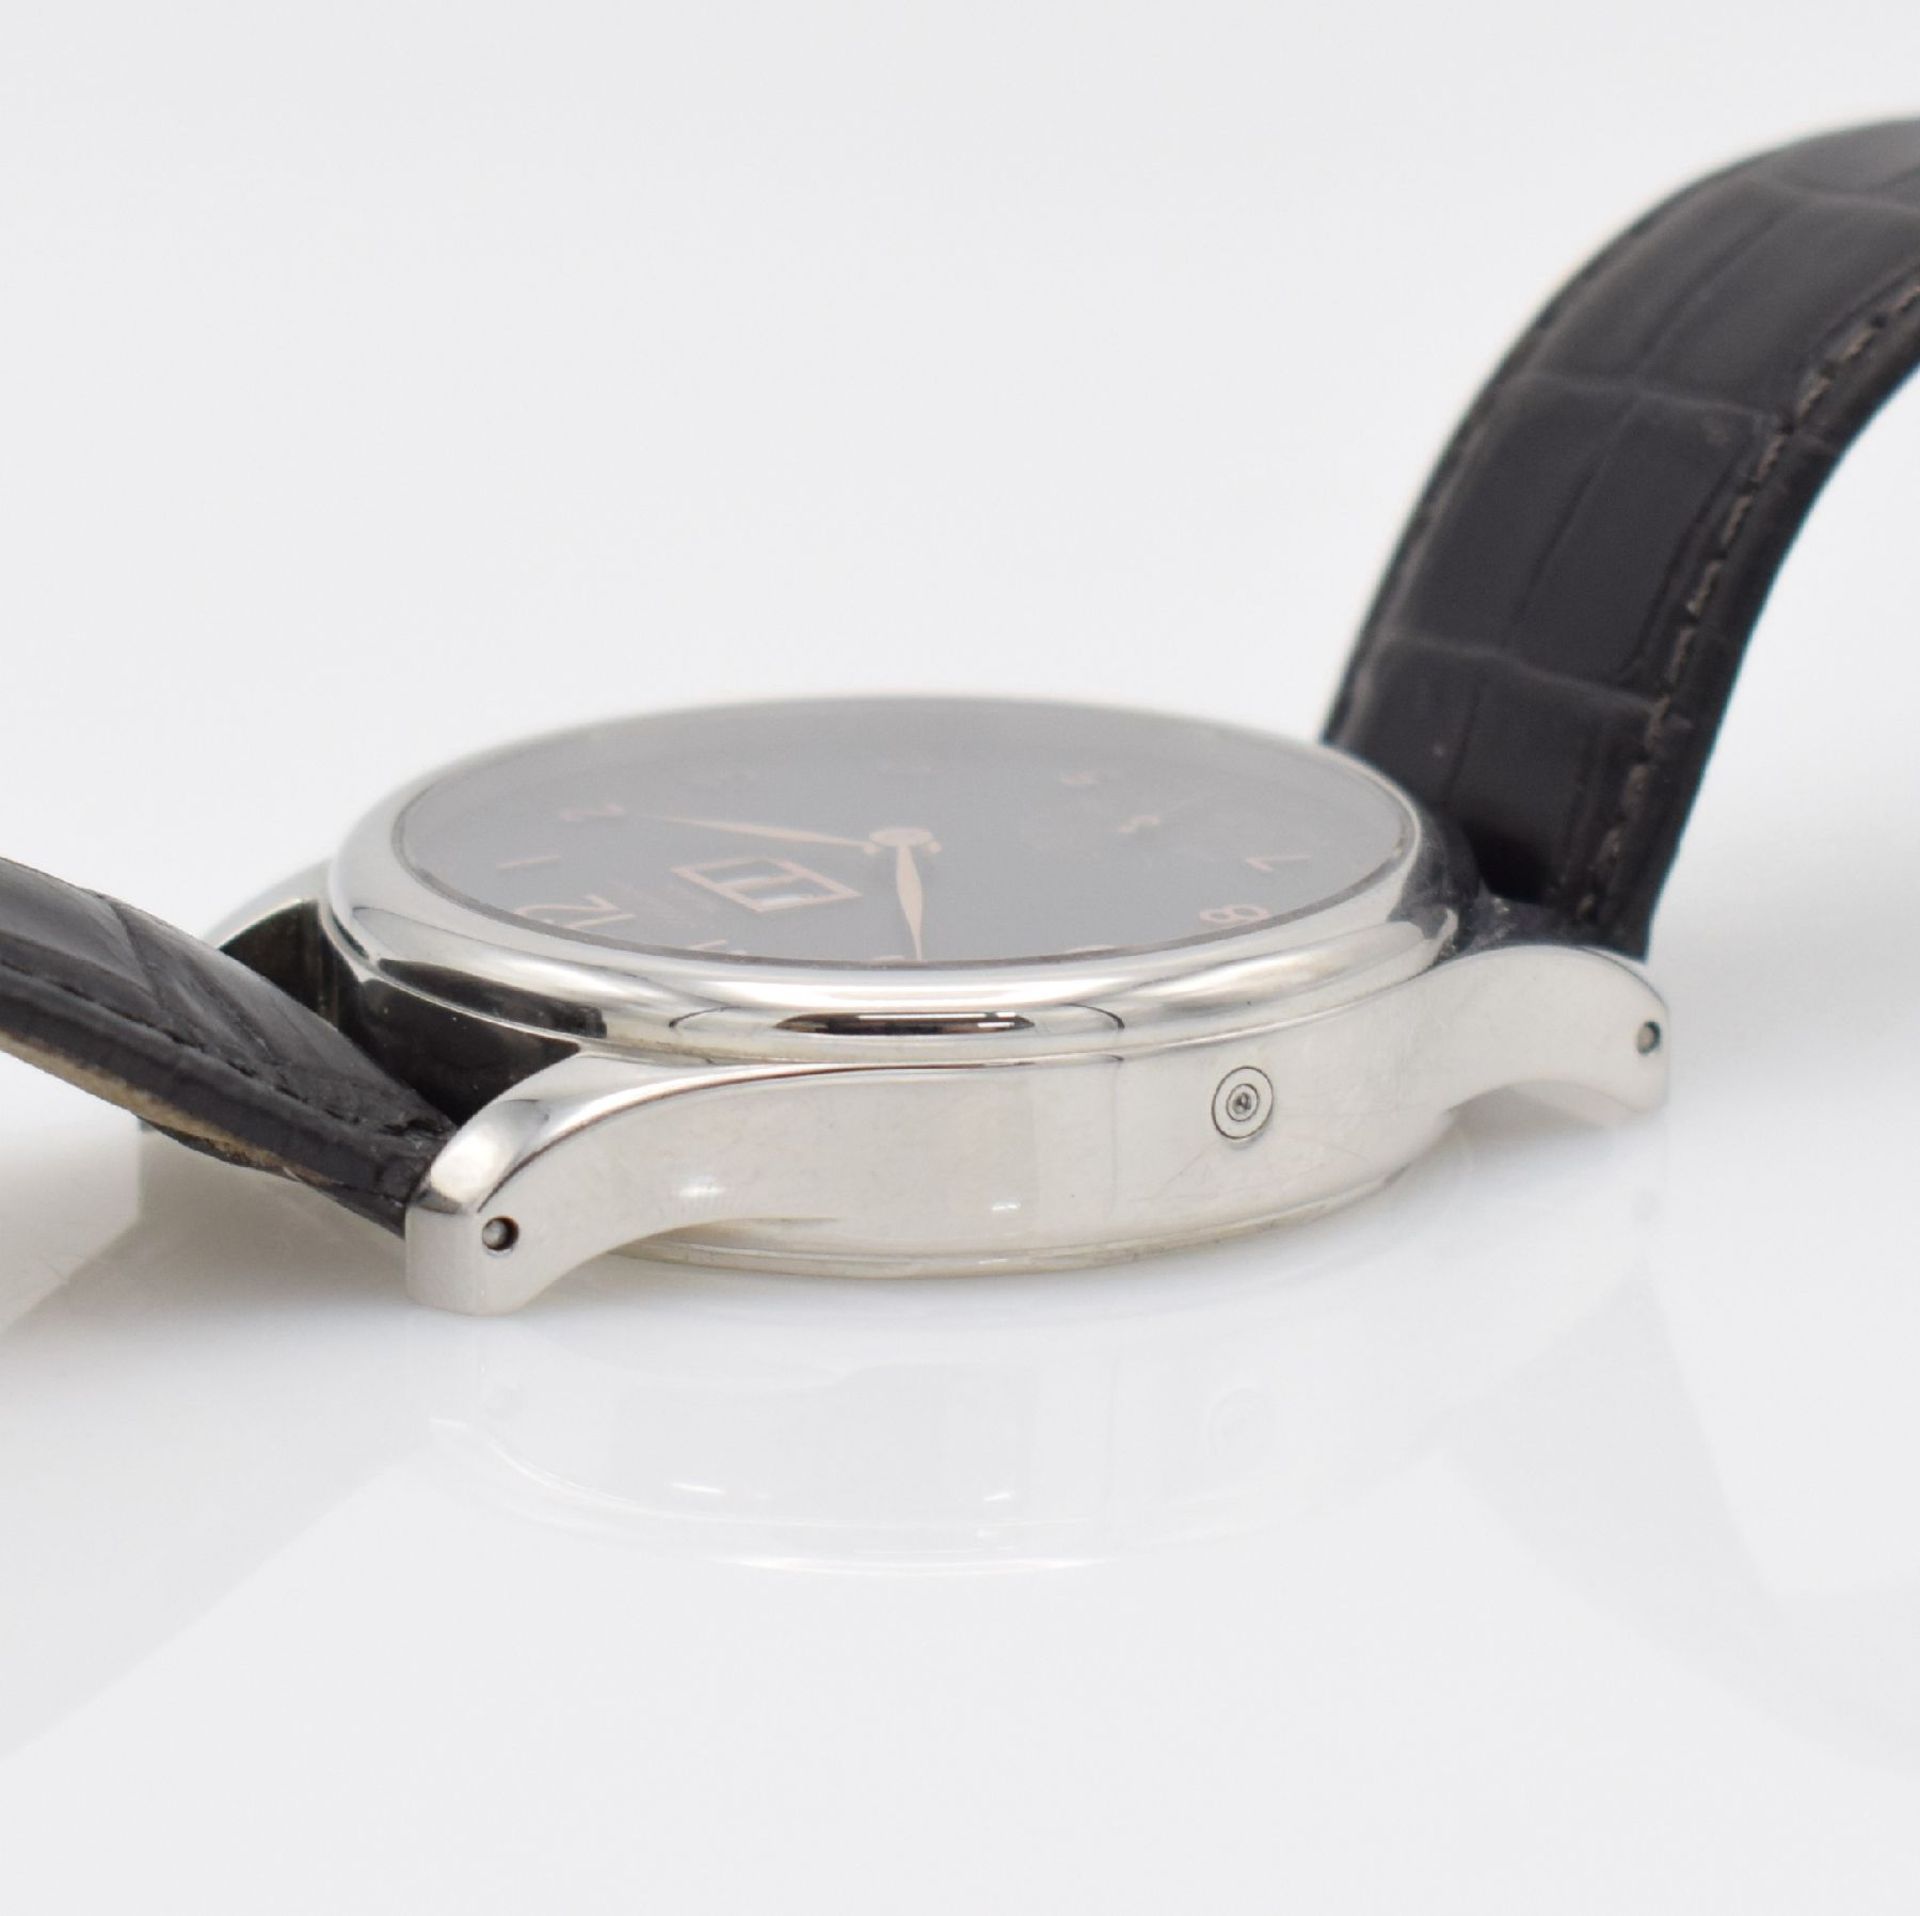 J. OBERLEITNER Wiesbaden wristwatch, manual winding, Switzerland around 2000, stainless steel - Bild 5 aus 6